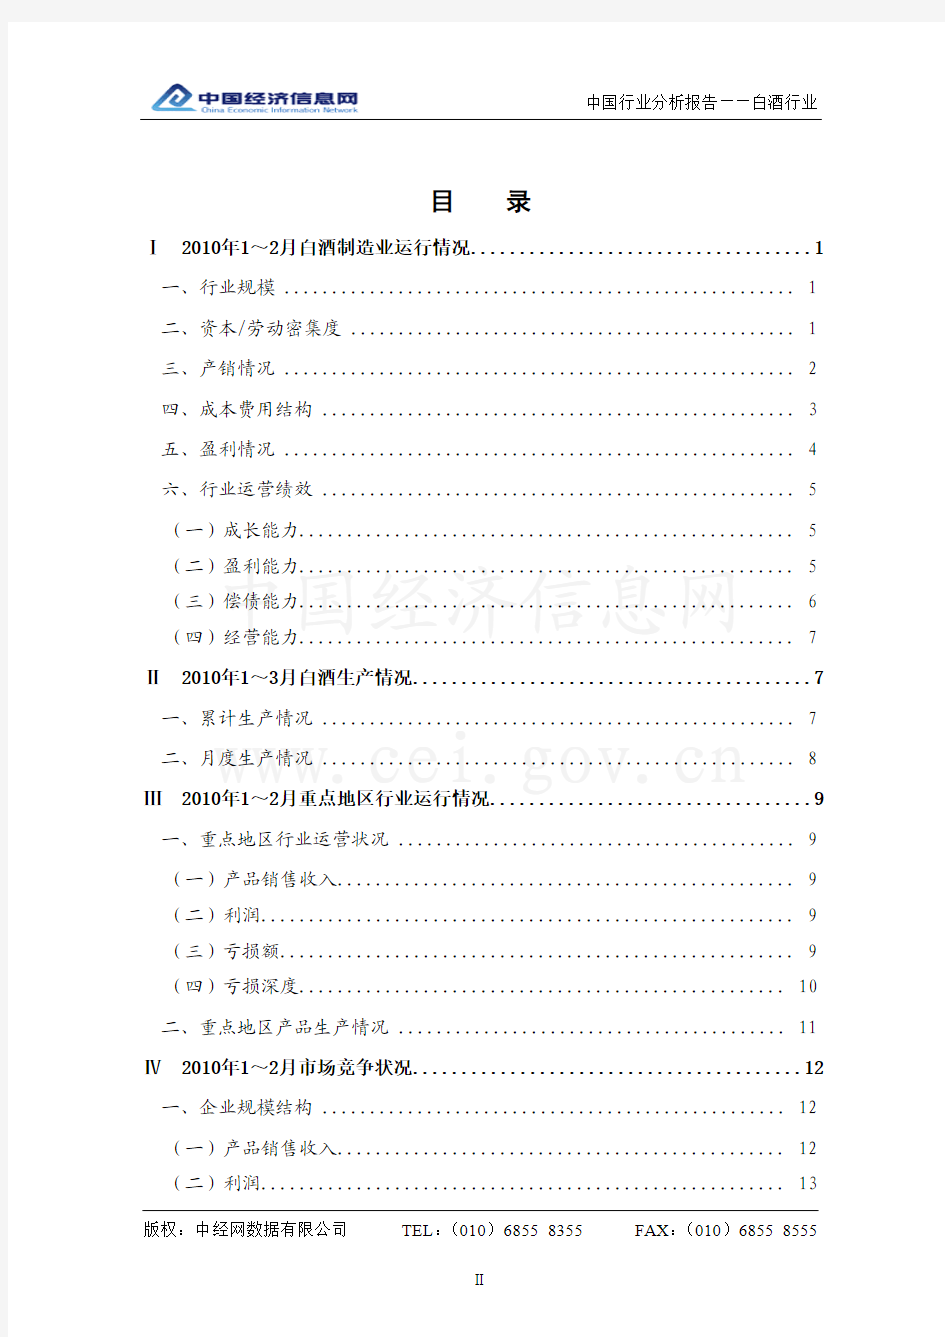 中国白酒行业分析报告(2010年1季度)